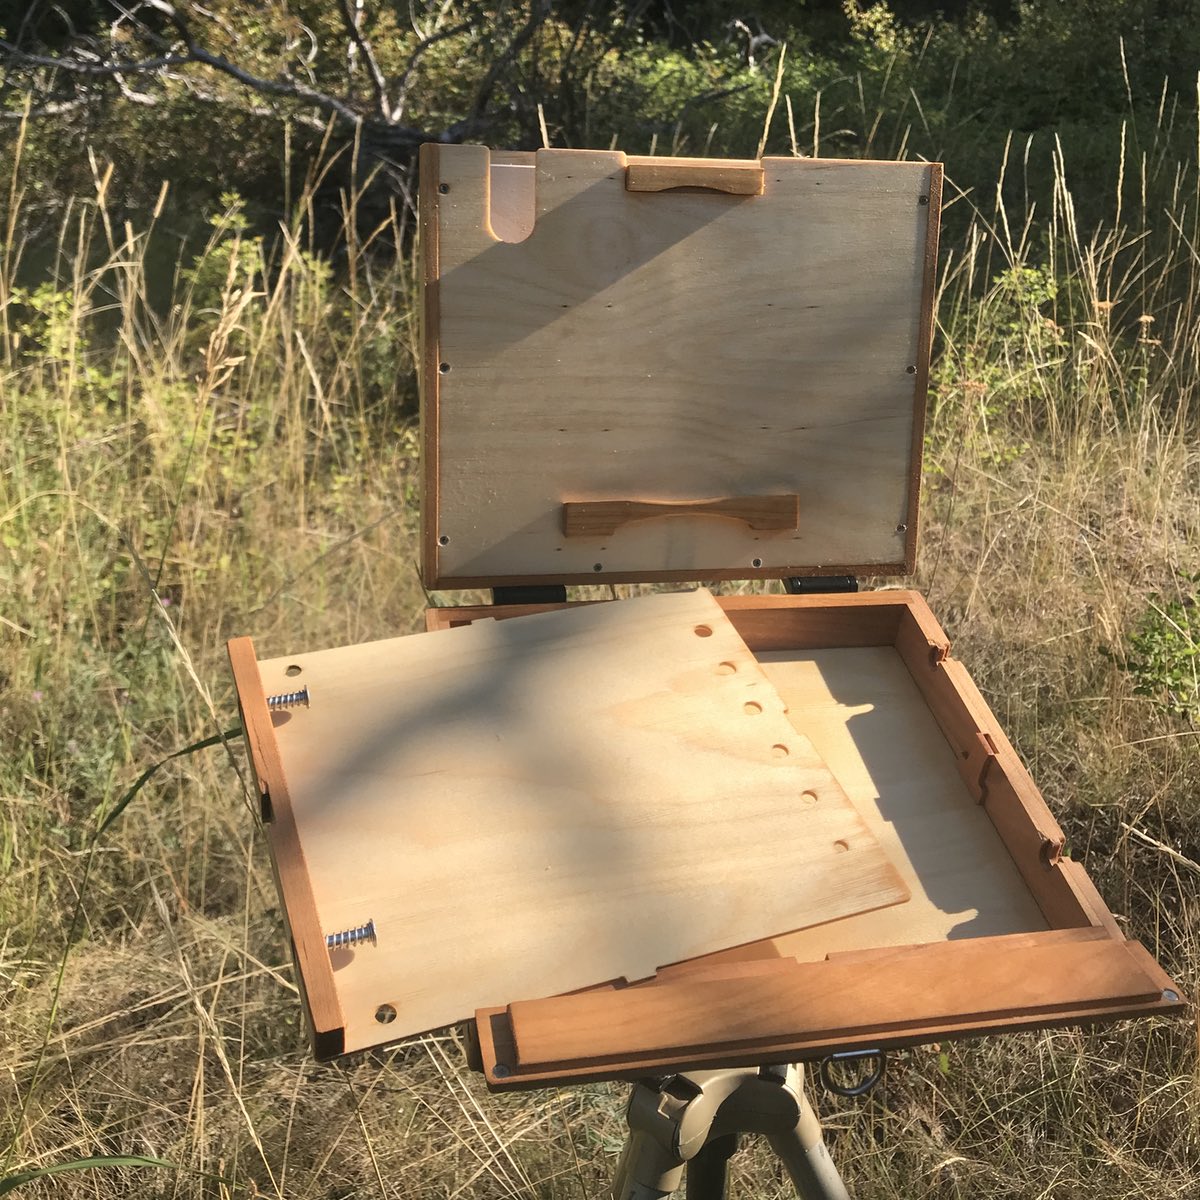 8 x 10 Blackfoot Lite Pochade Box – Alla Prima Pochade